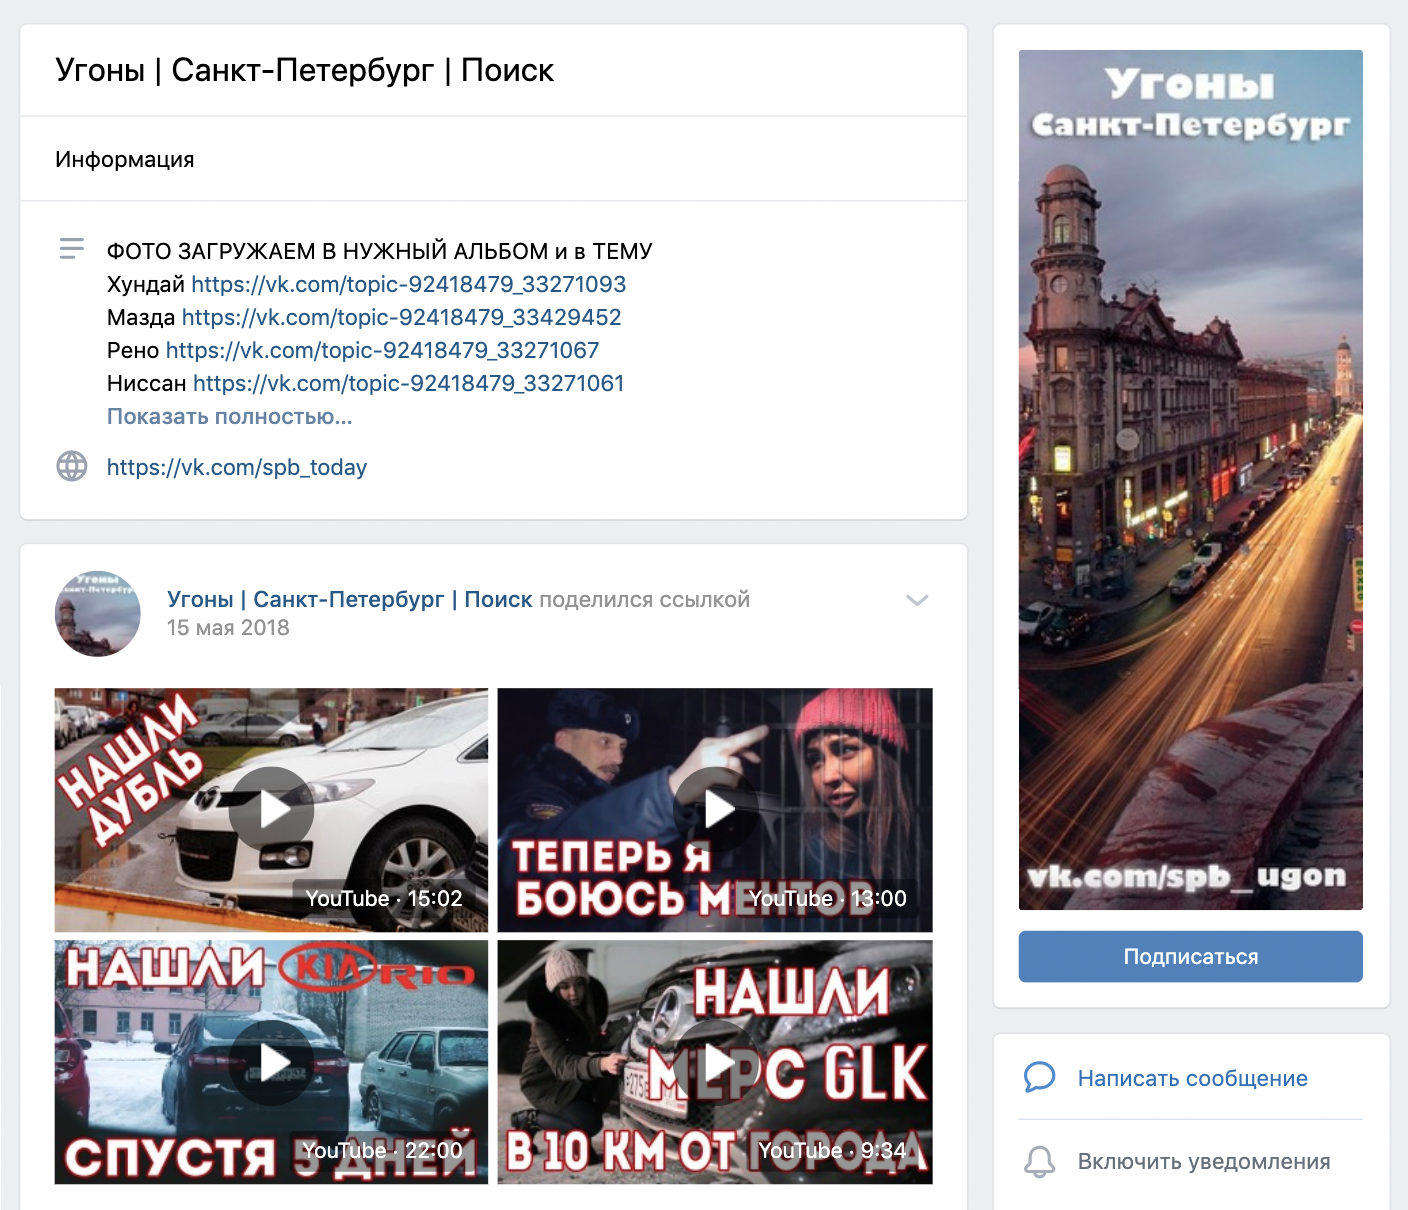 Питерская группа во «Вконтакте»